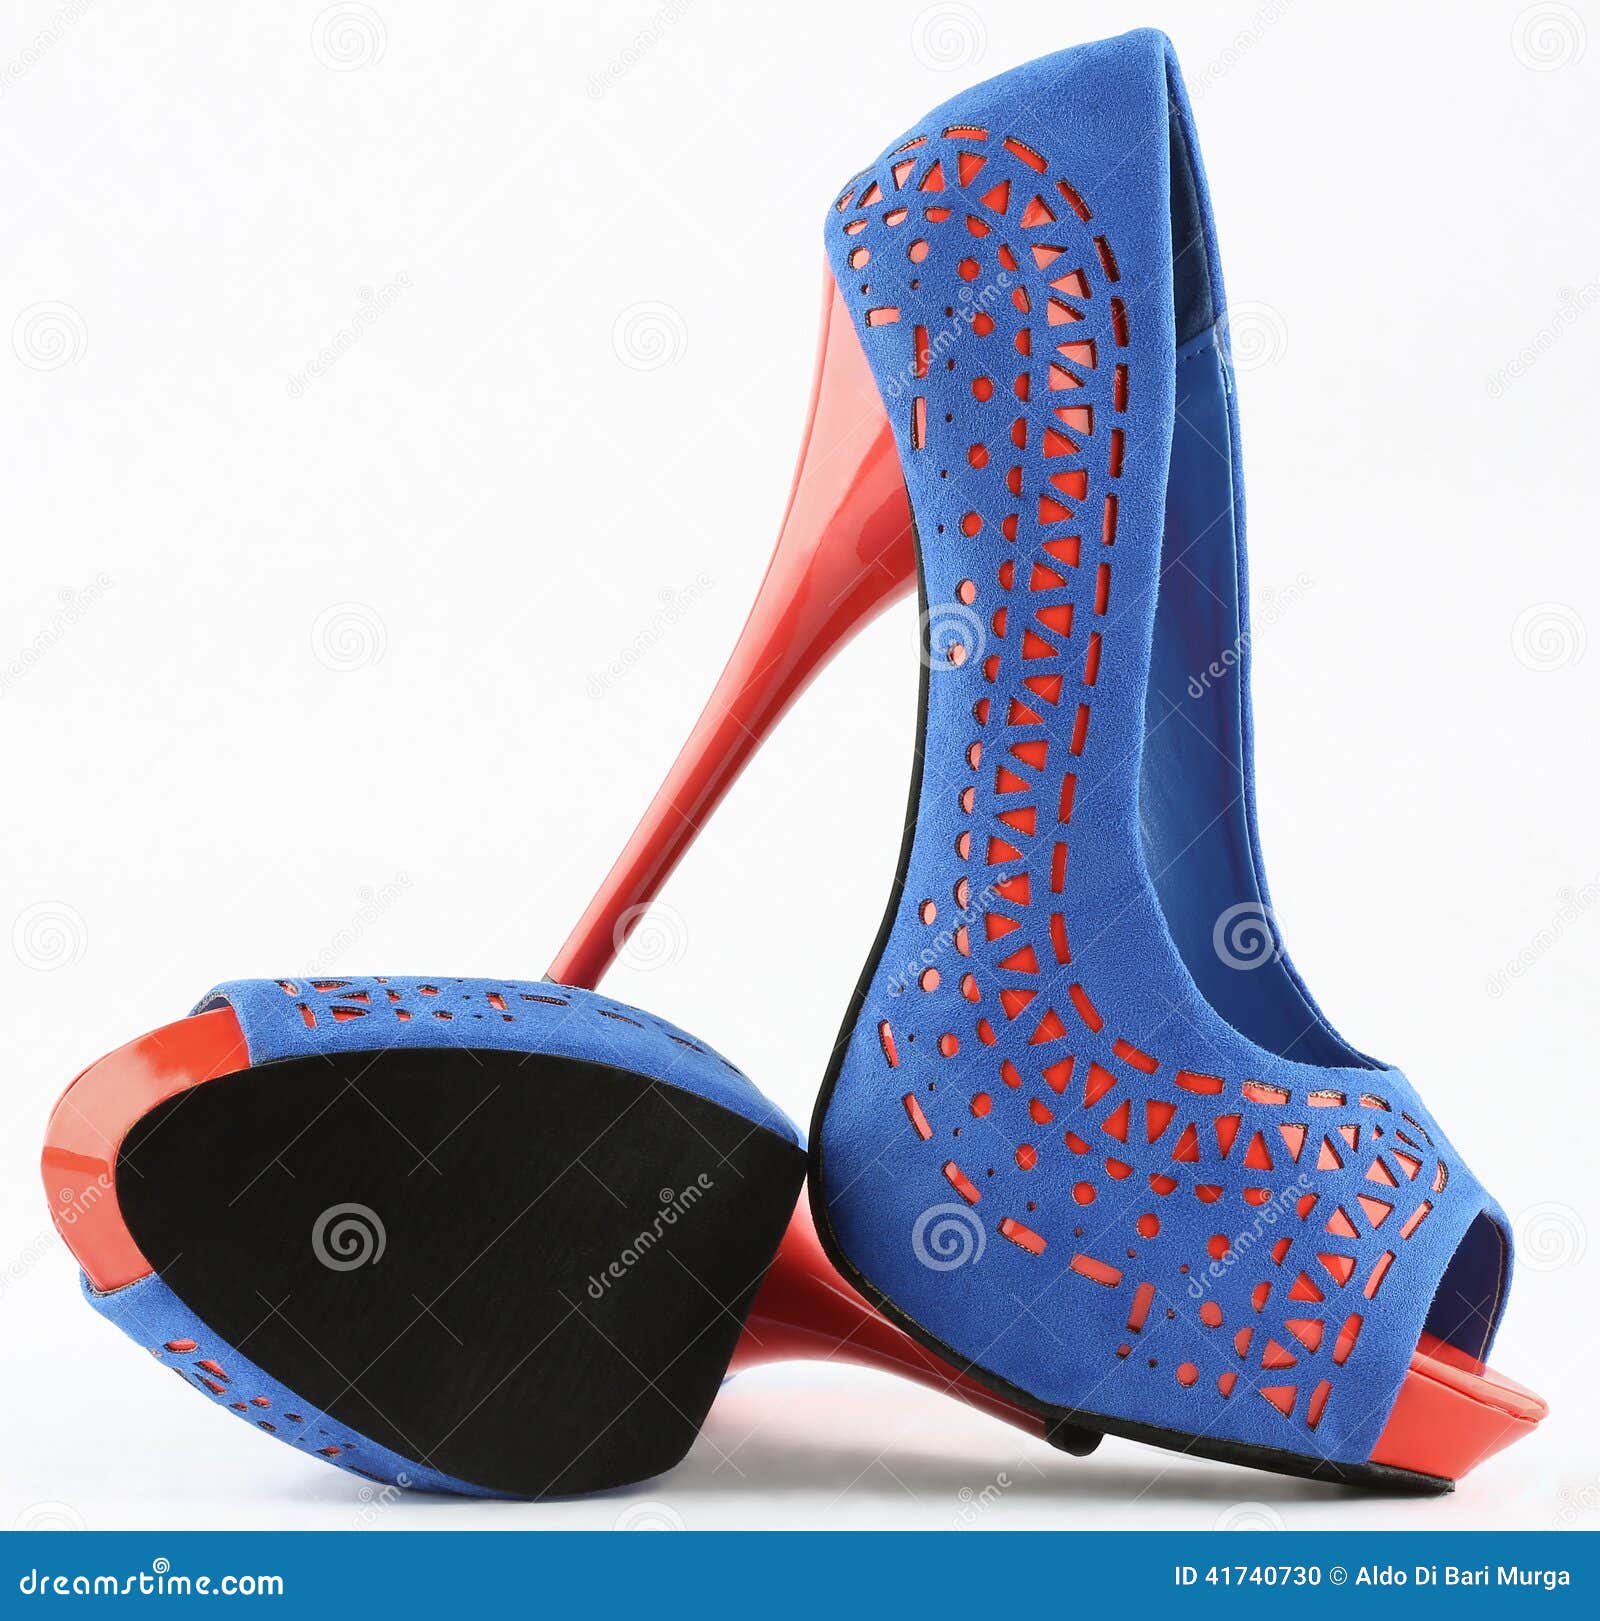 Awesome Sporty Orange and Blue Mesh Heels | Heels, Mesh heels, Blue heels